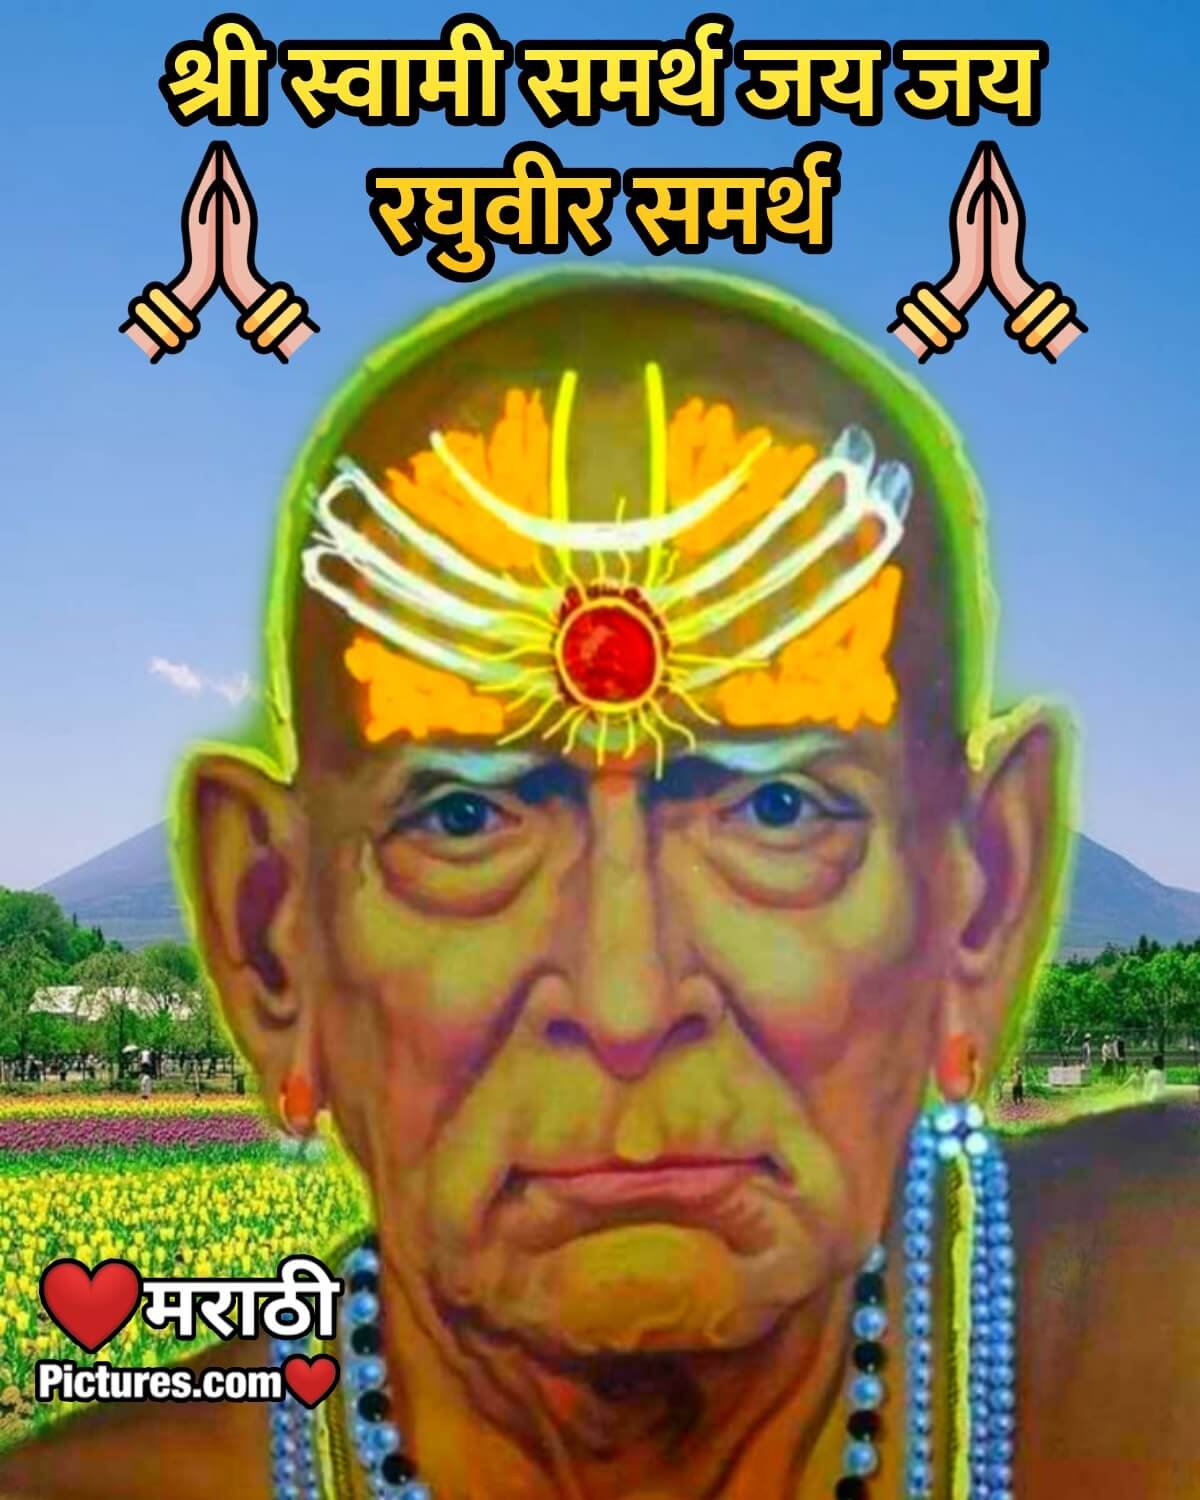 Shree Swami Samarth Jai Jai Raghuveer Samarth